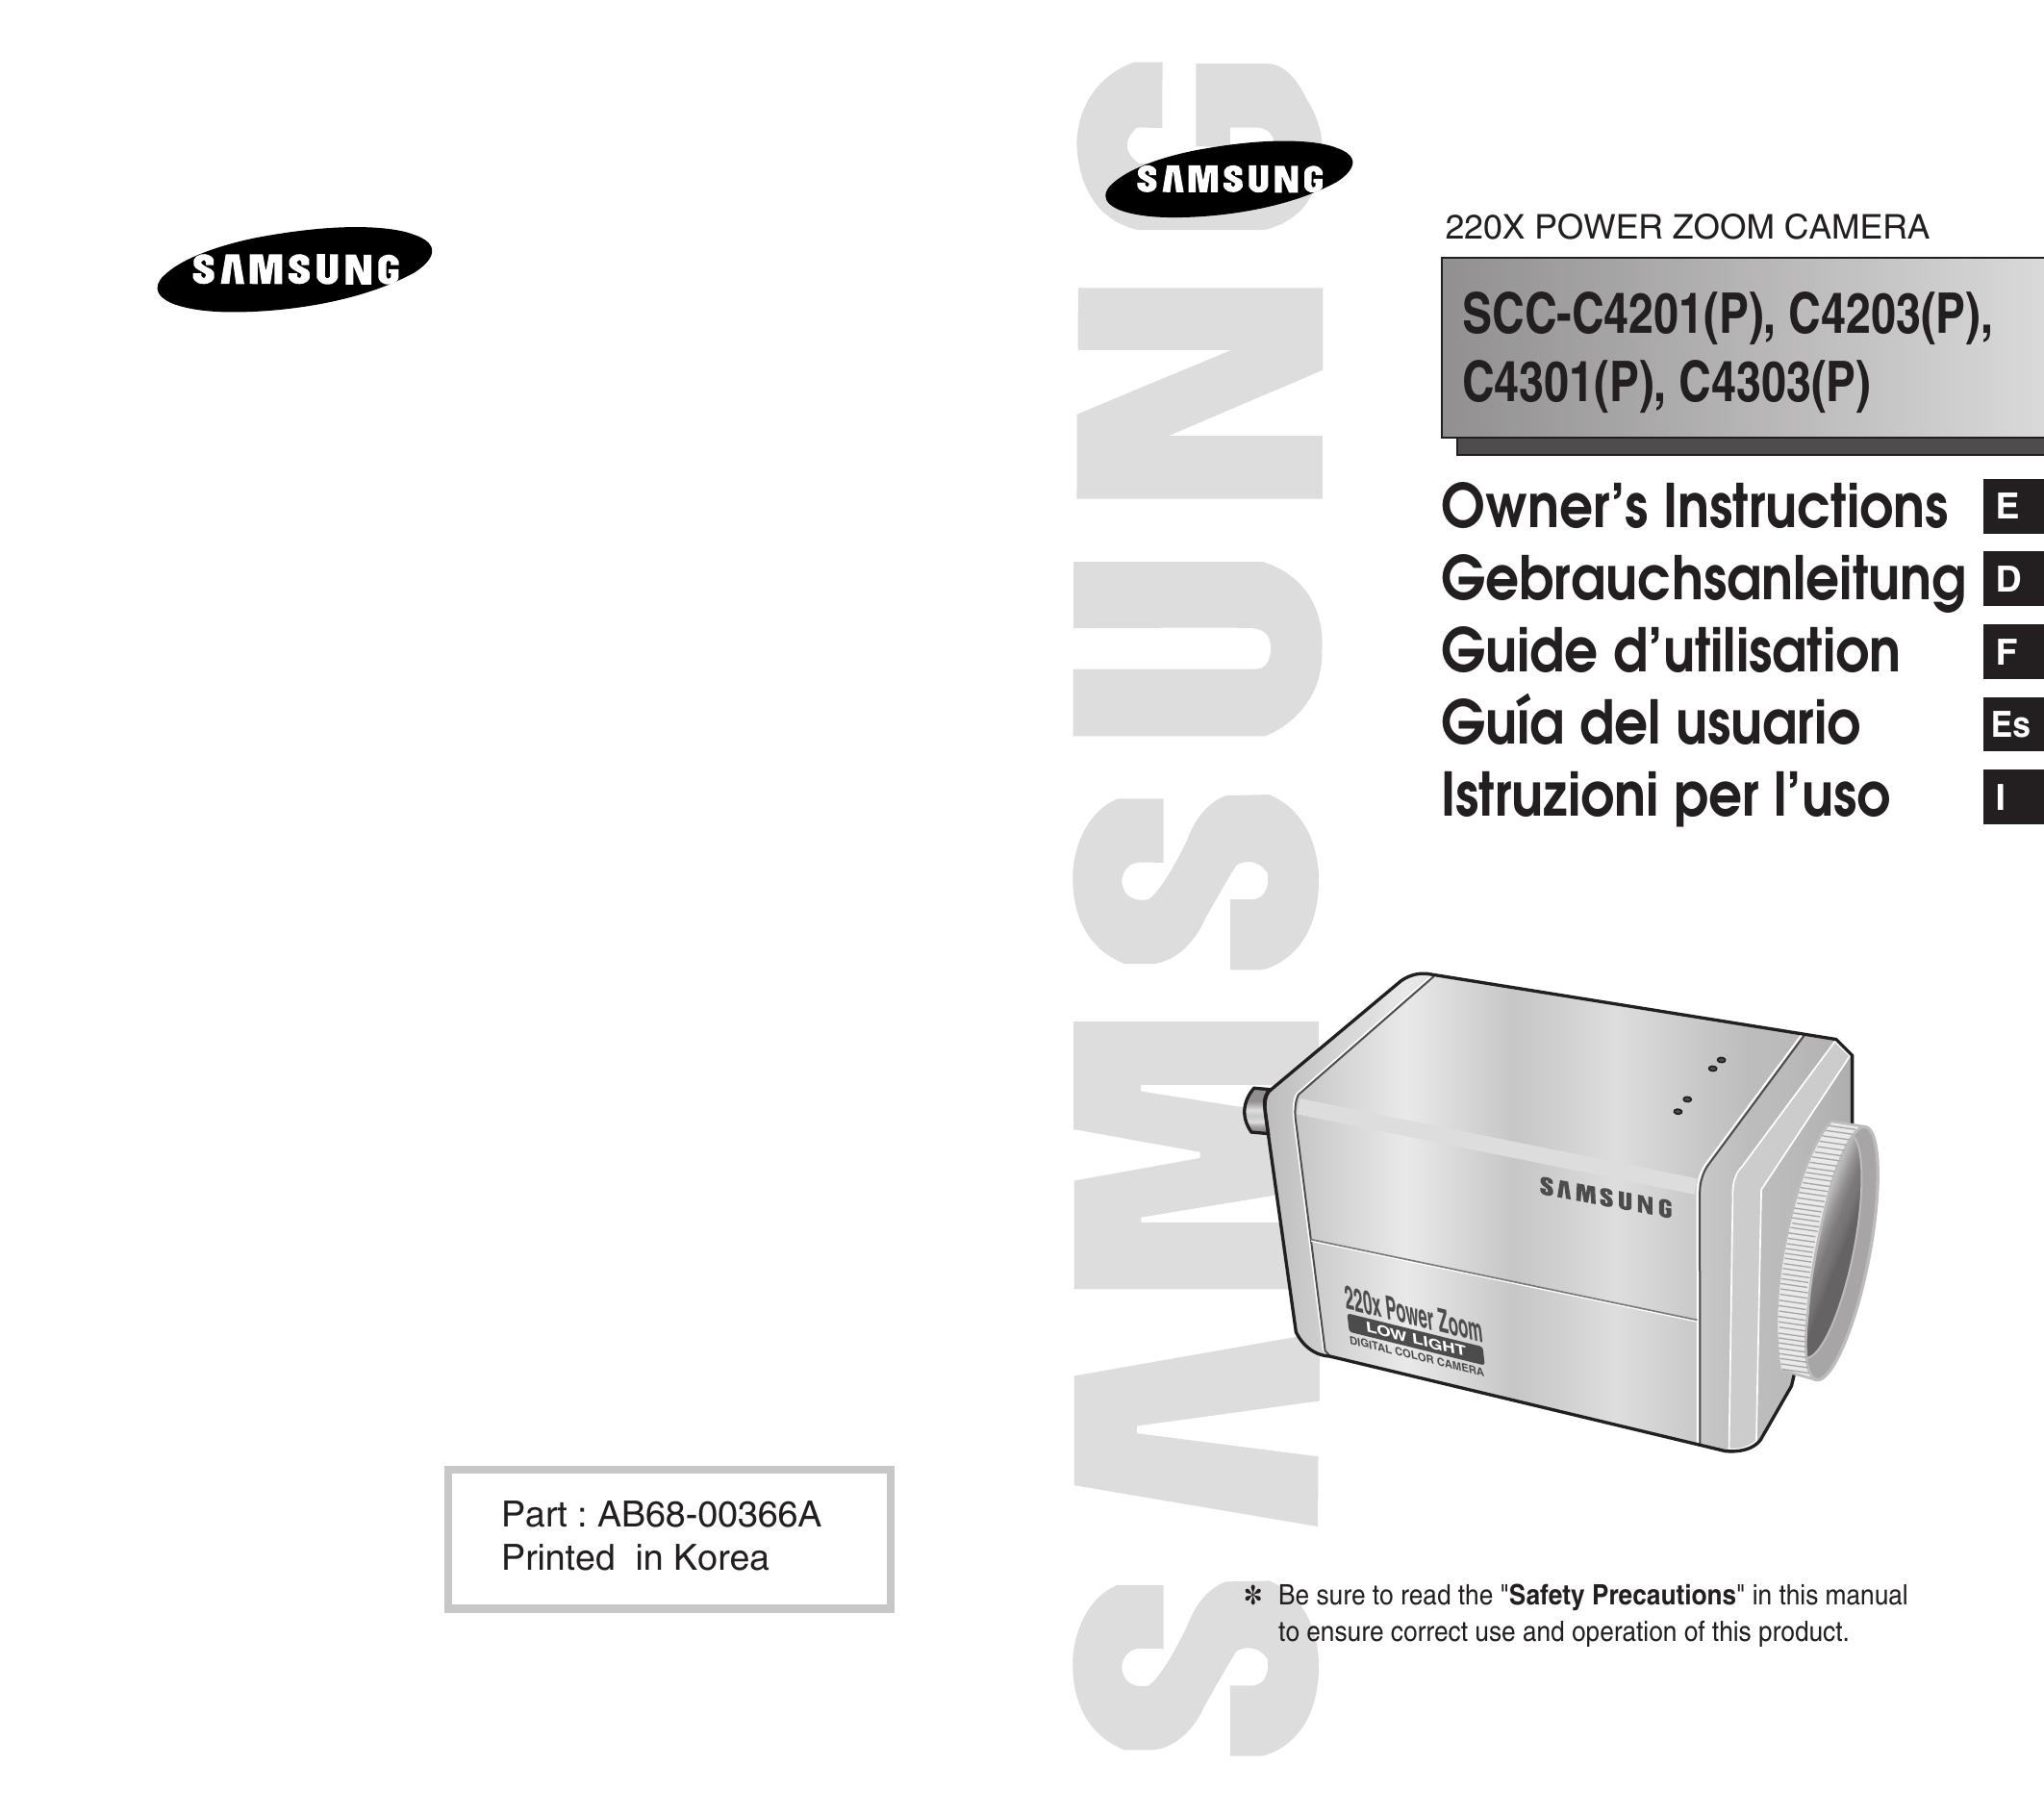 Samsung SCC-C4201(P) Security Camera User Manual